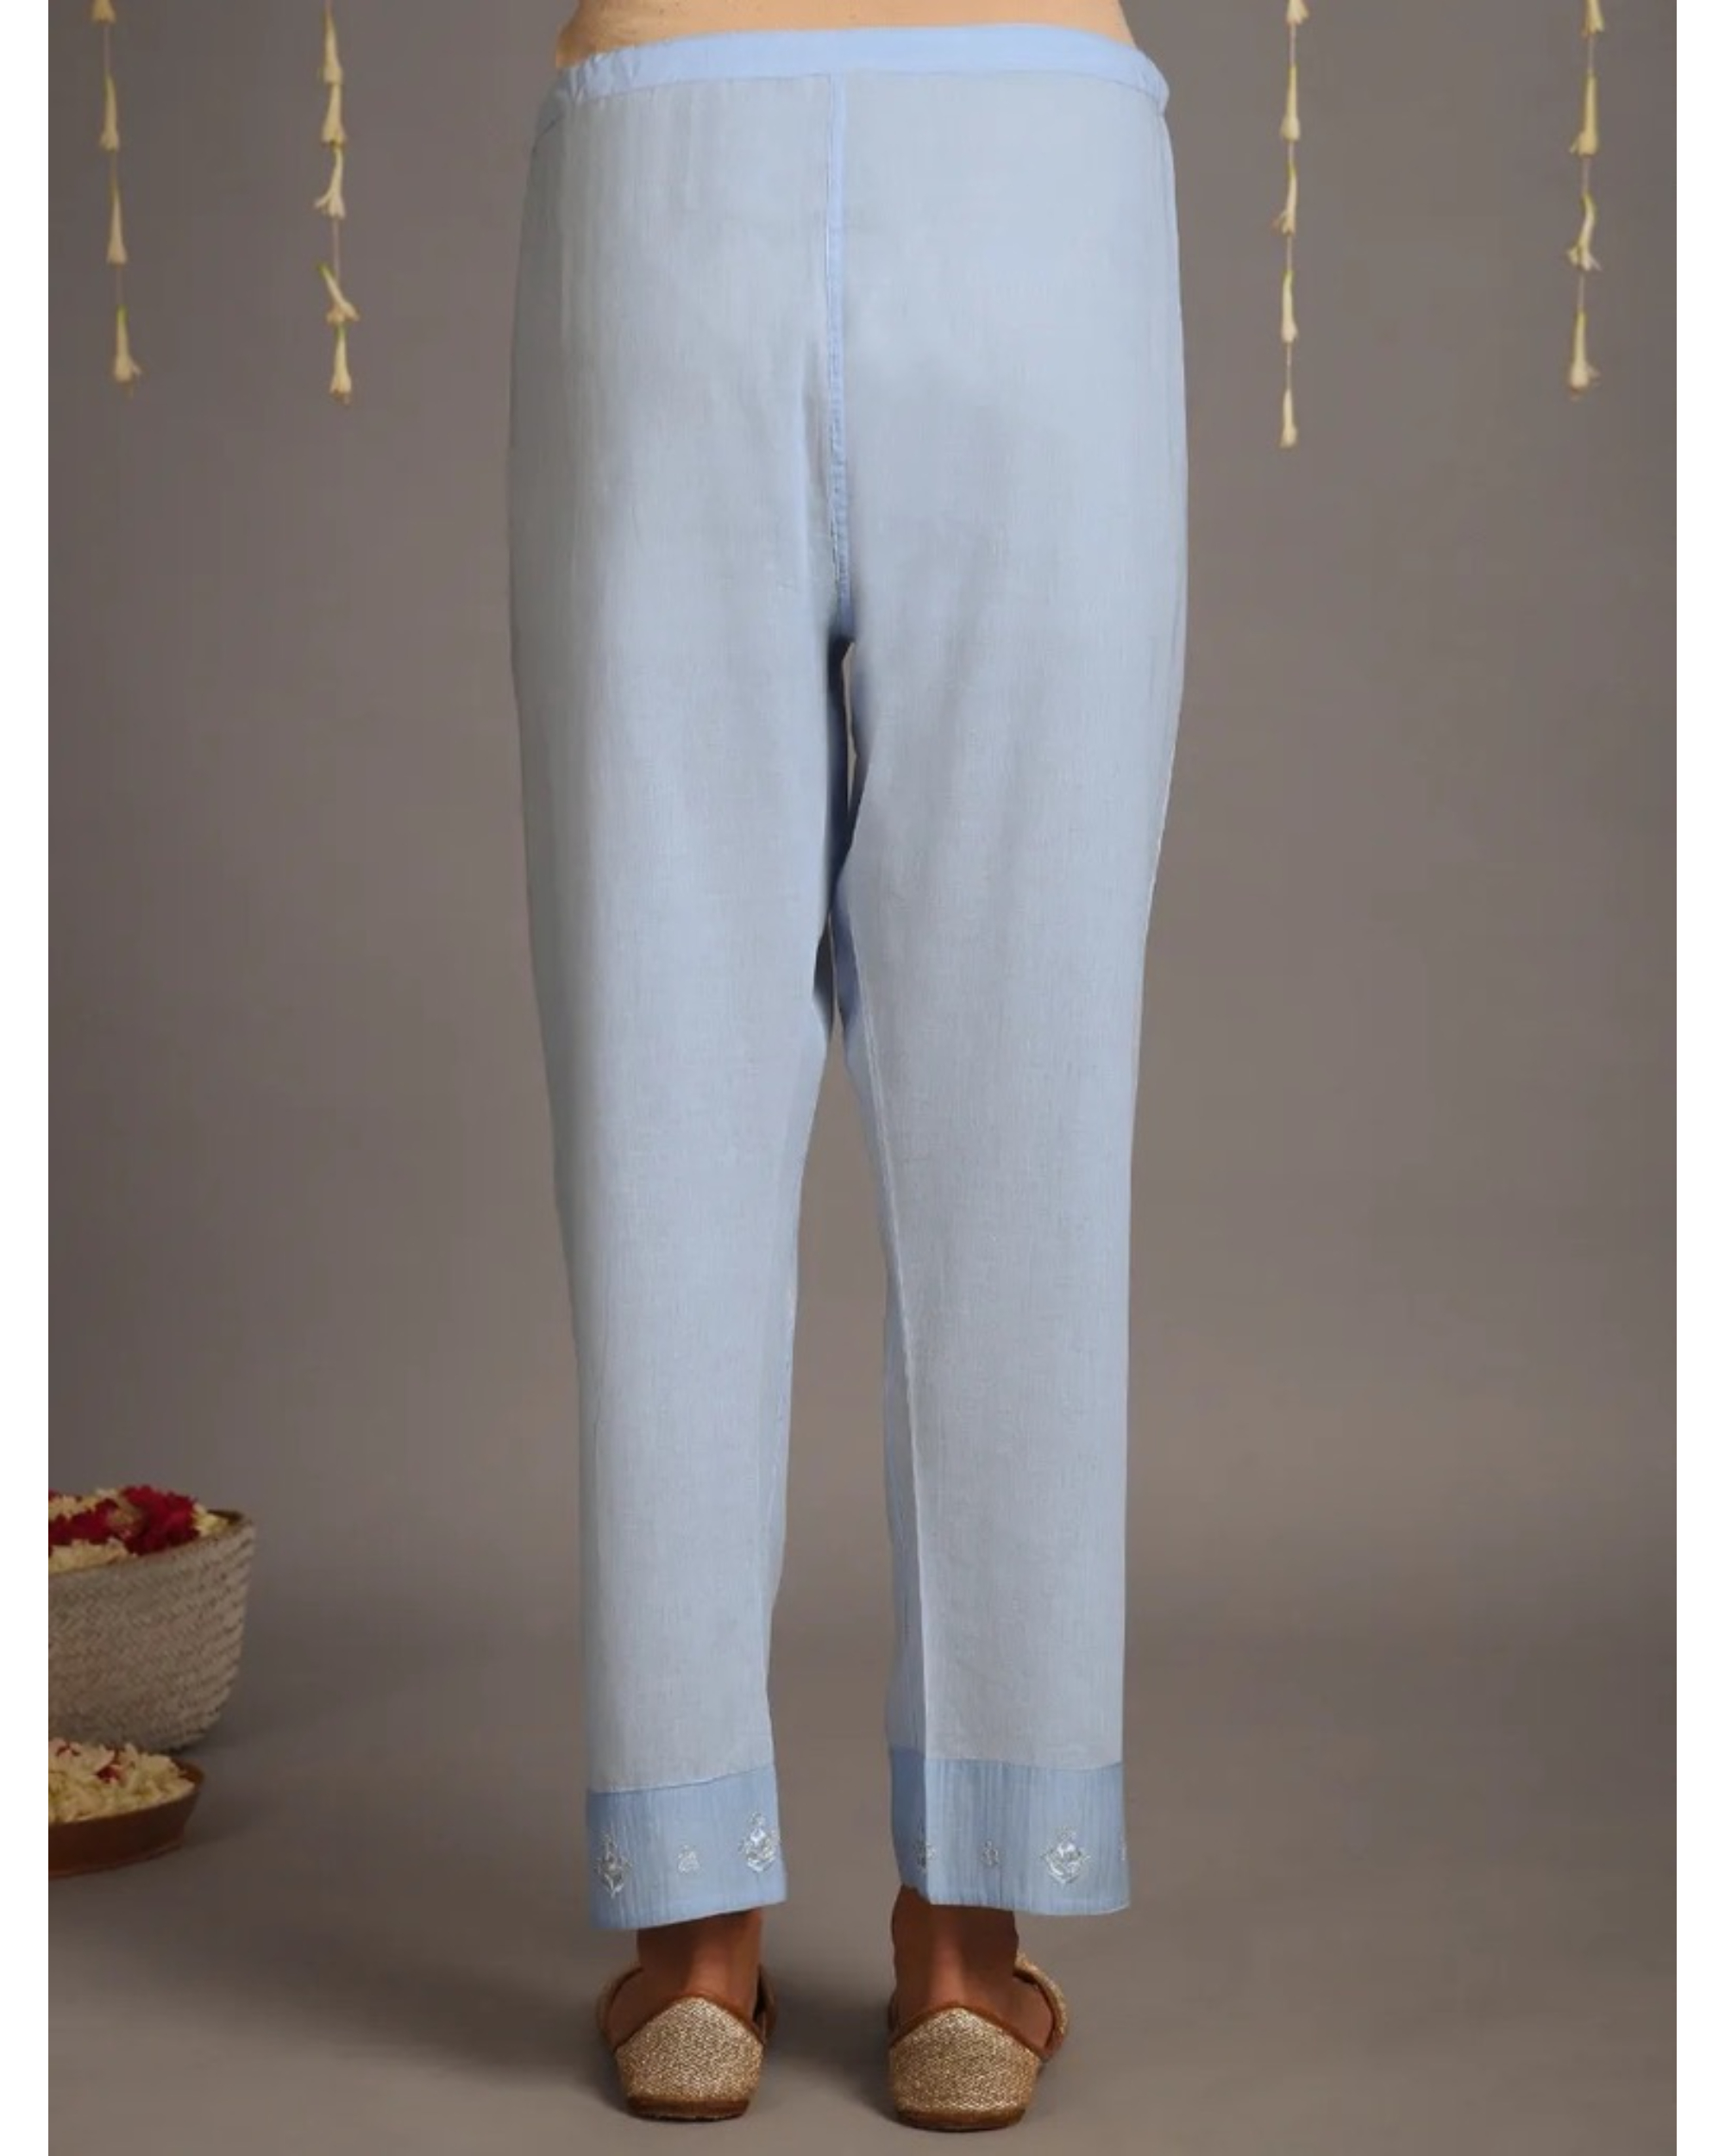 Pastel blue cotton pants